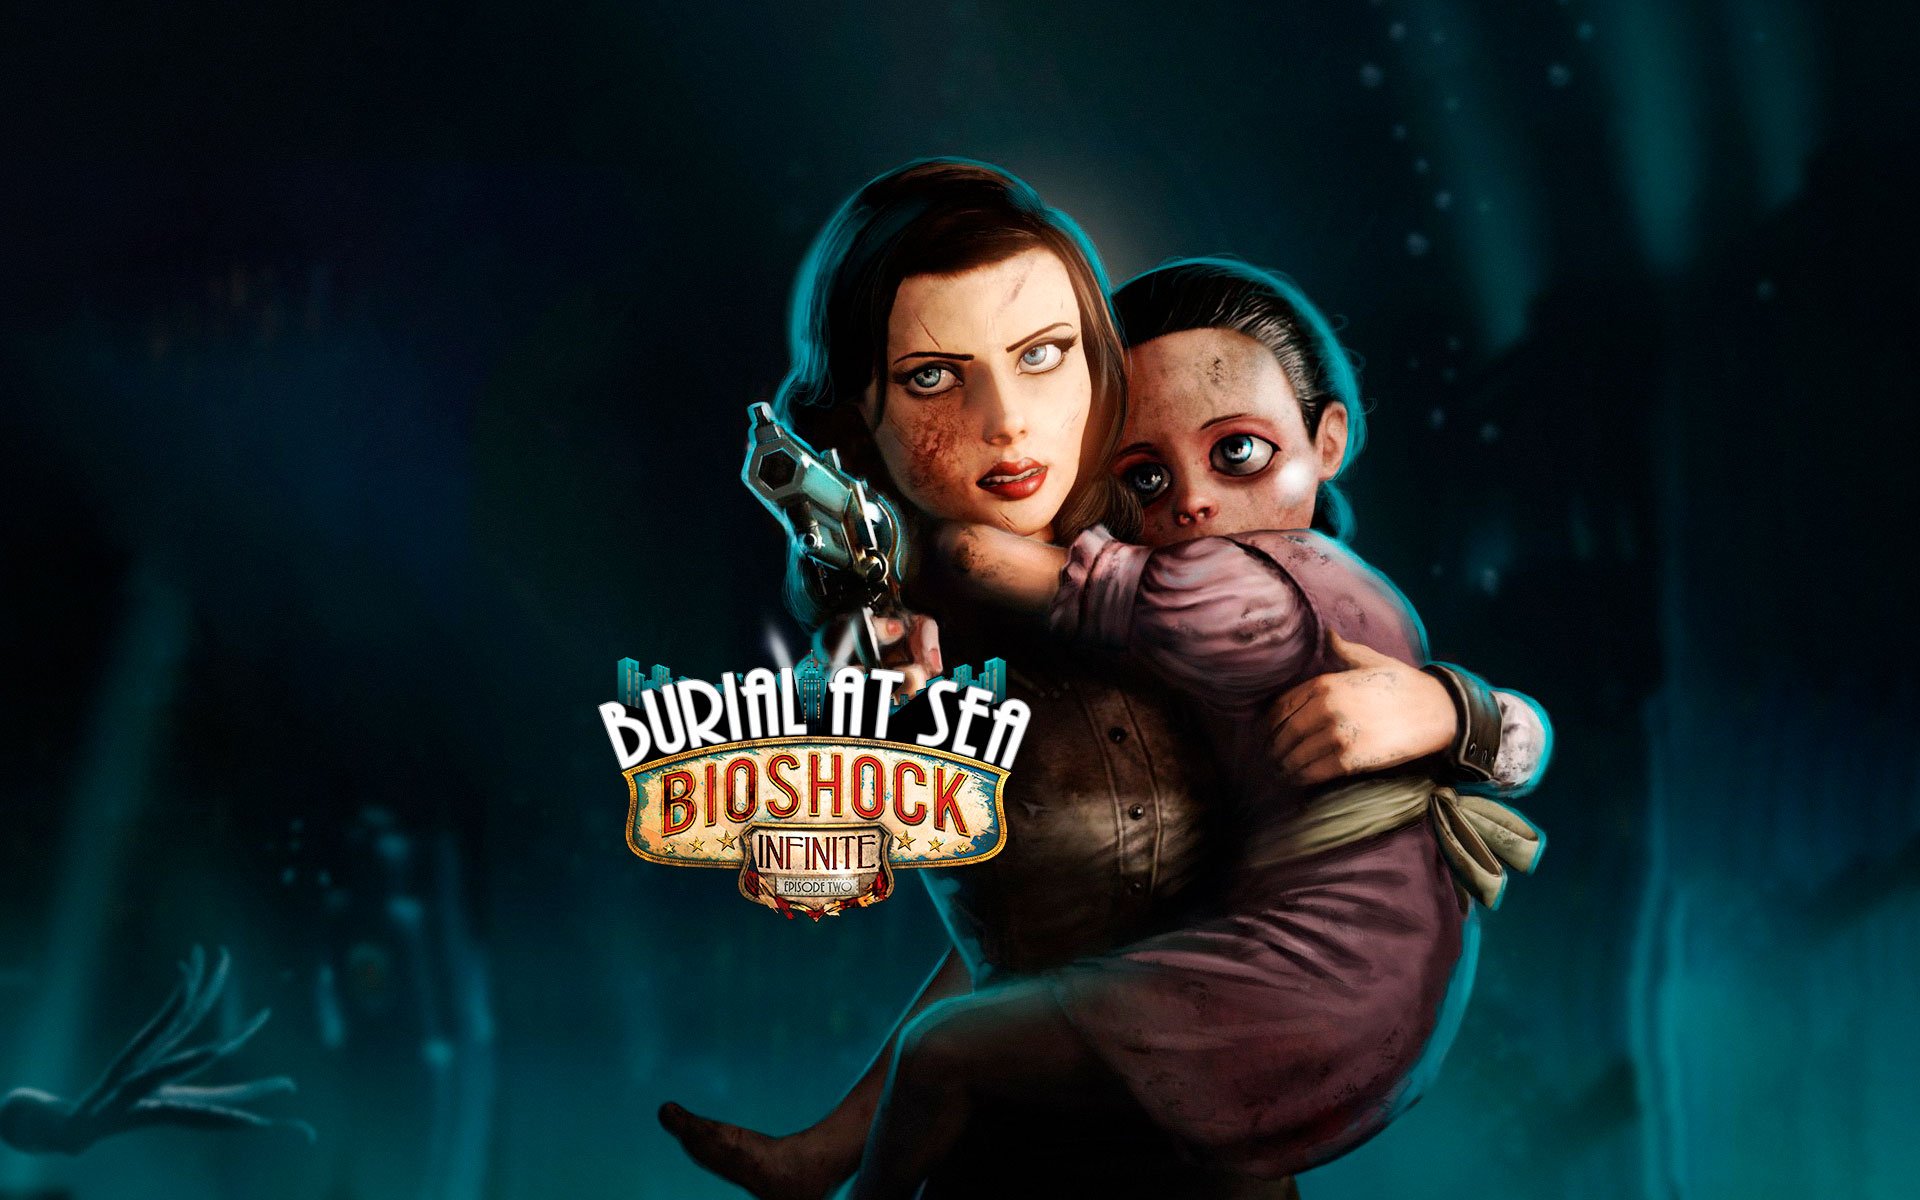 BioShock Infinite: Burial at Sea - Episode 2